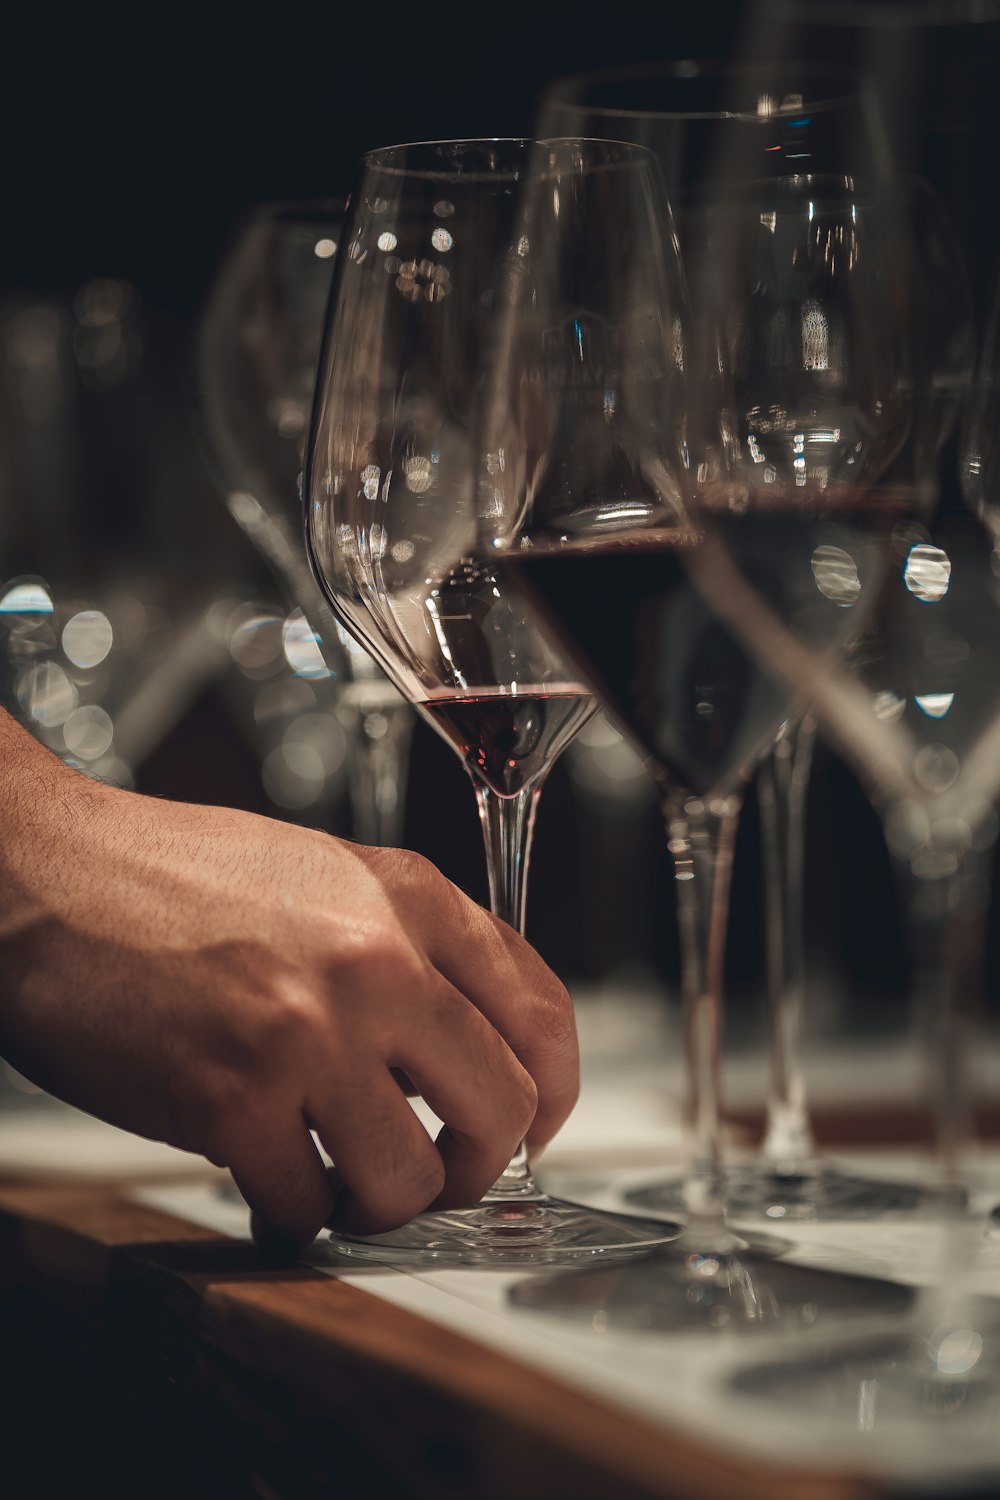 la main d’une personne touchant un verre de vin